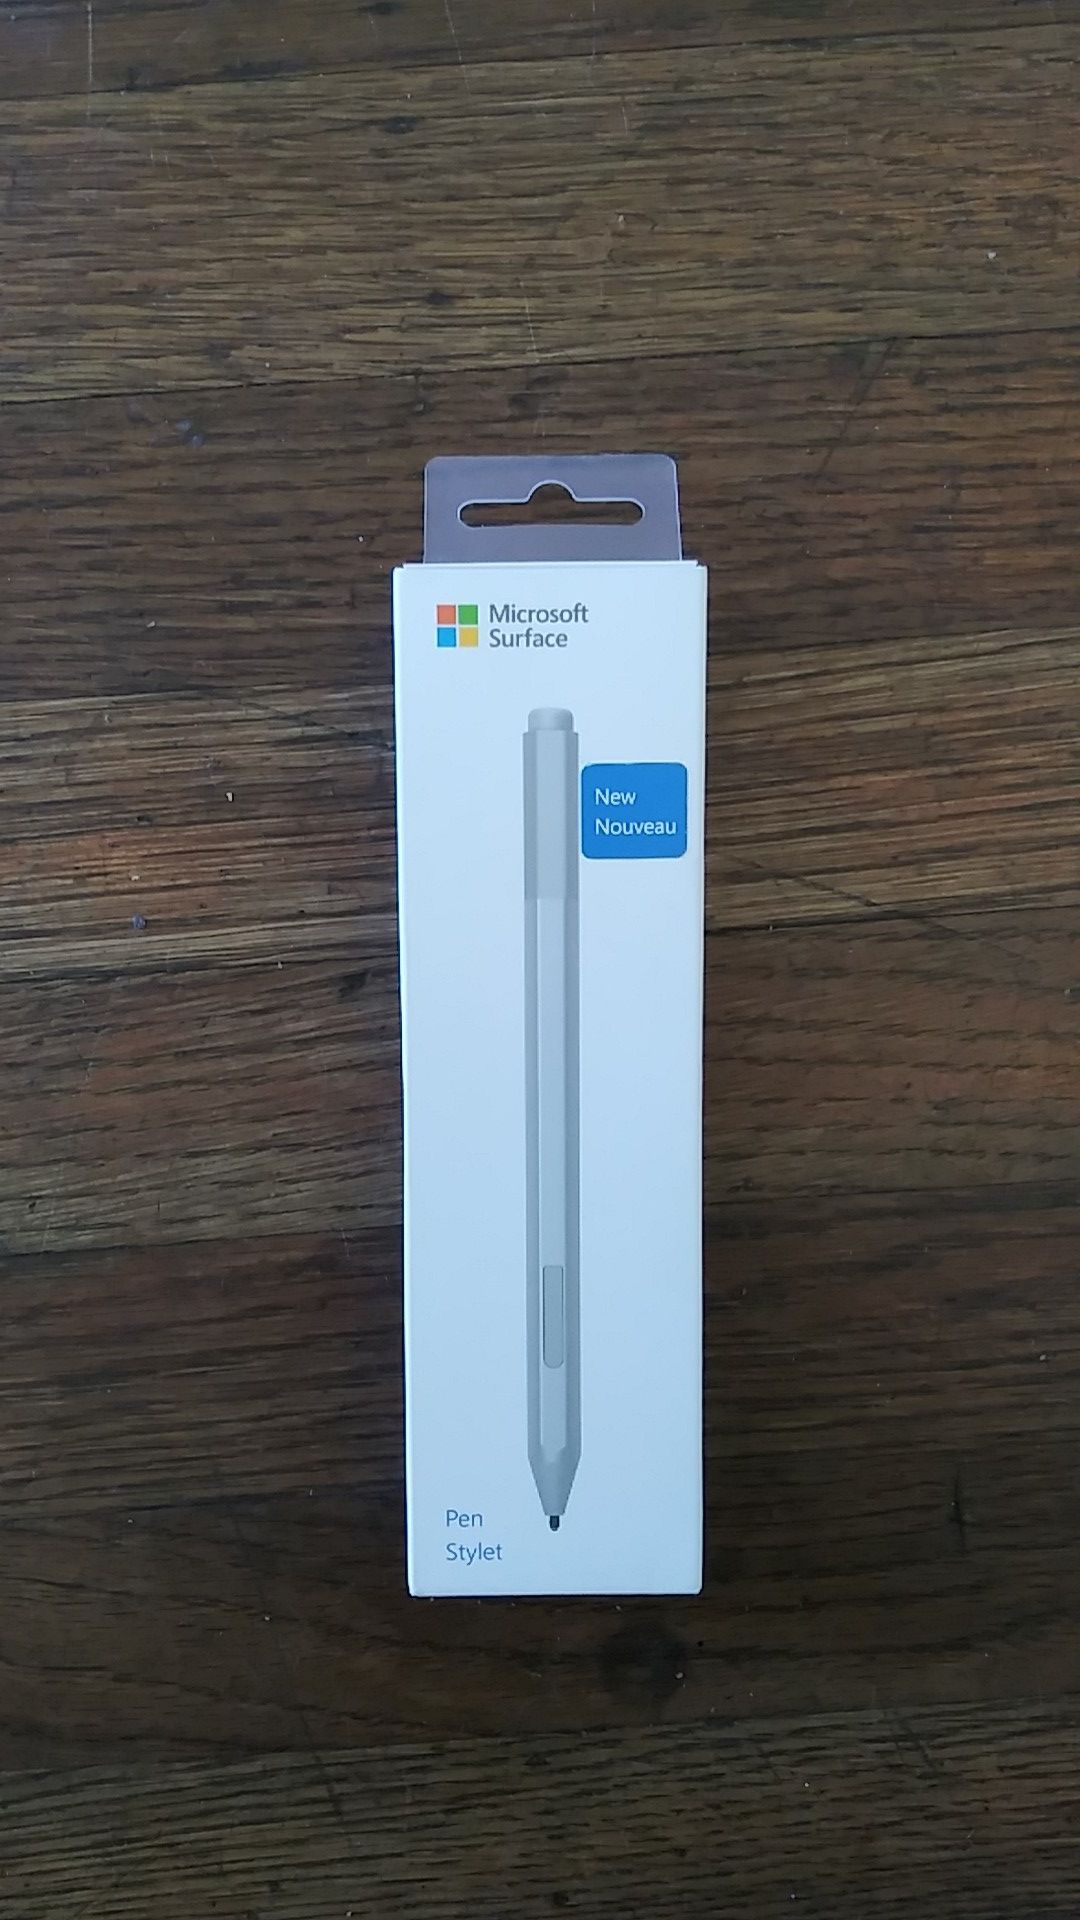 Microsoft Surface pen style new nouveau